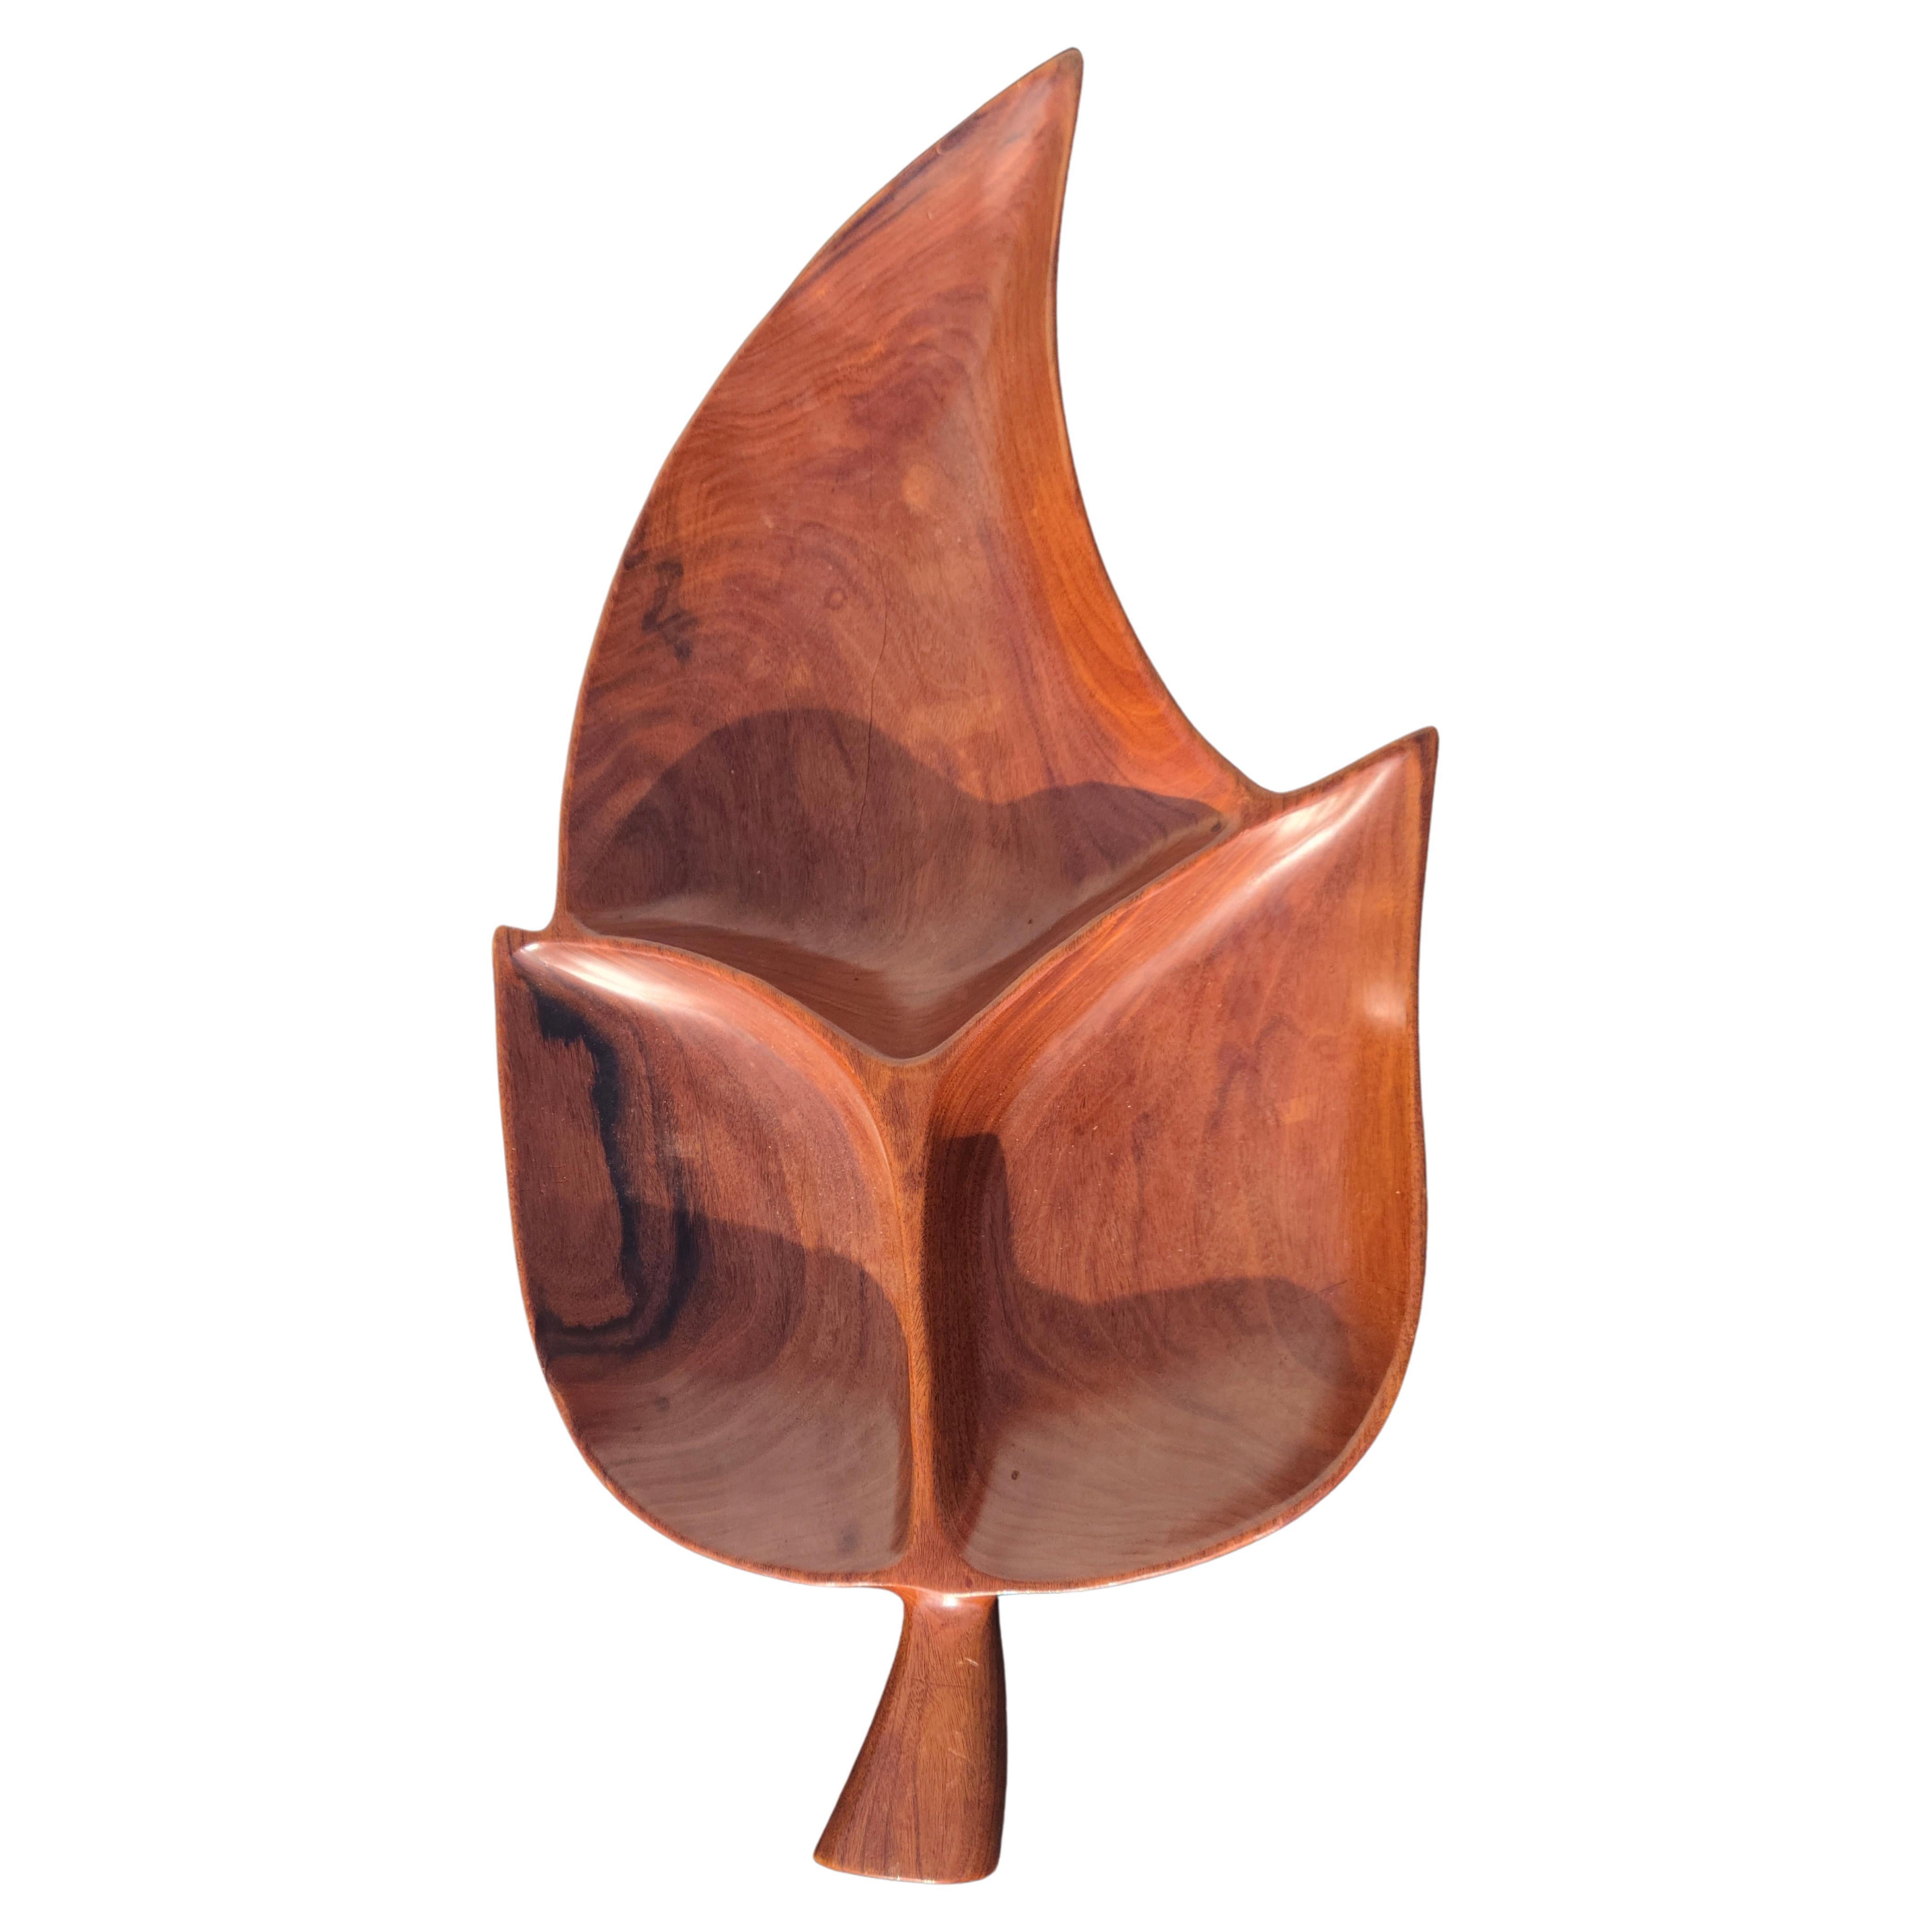 Bol en bois sculpté 
Semble être un bois de fer trouvé au Mexique.
Bois exotique très dense. 